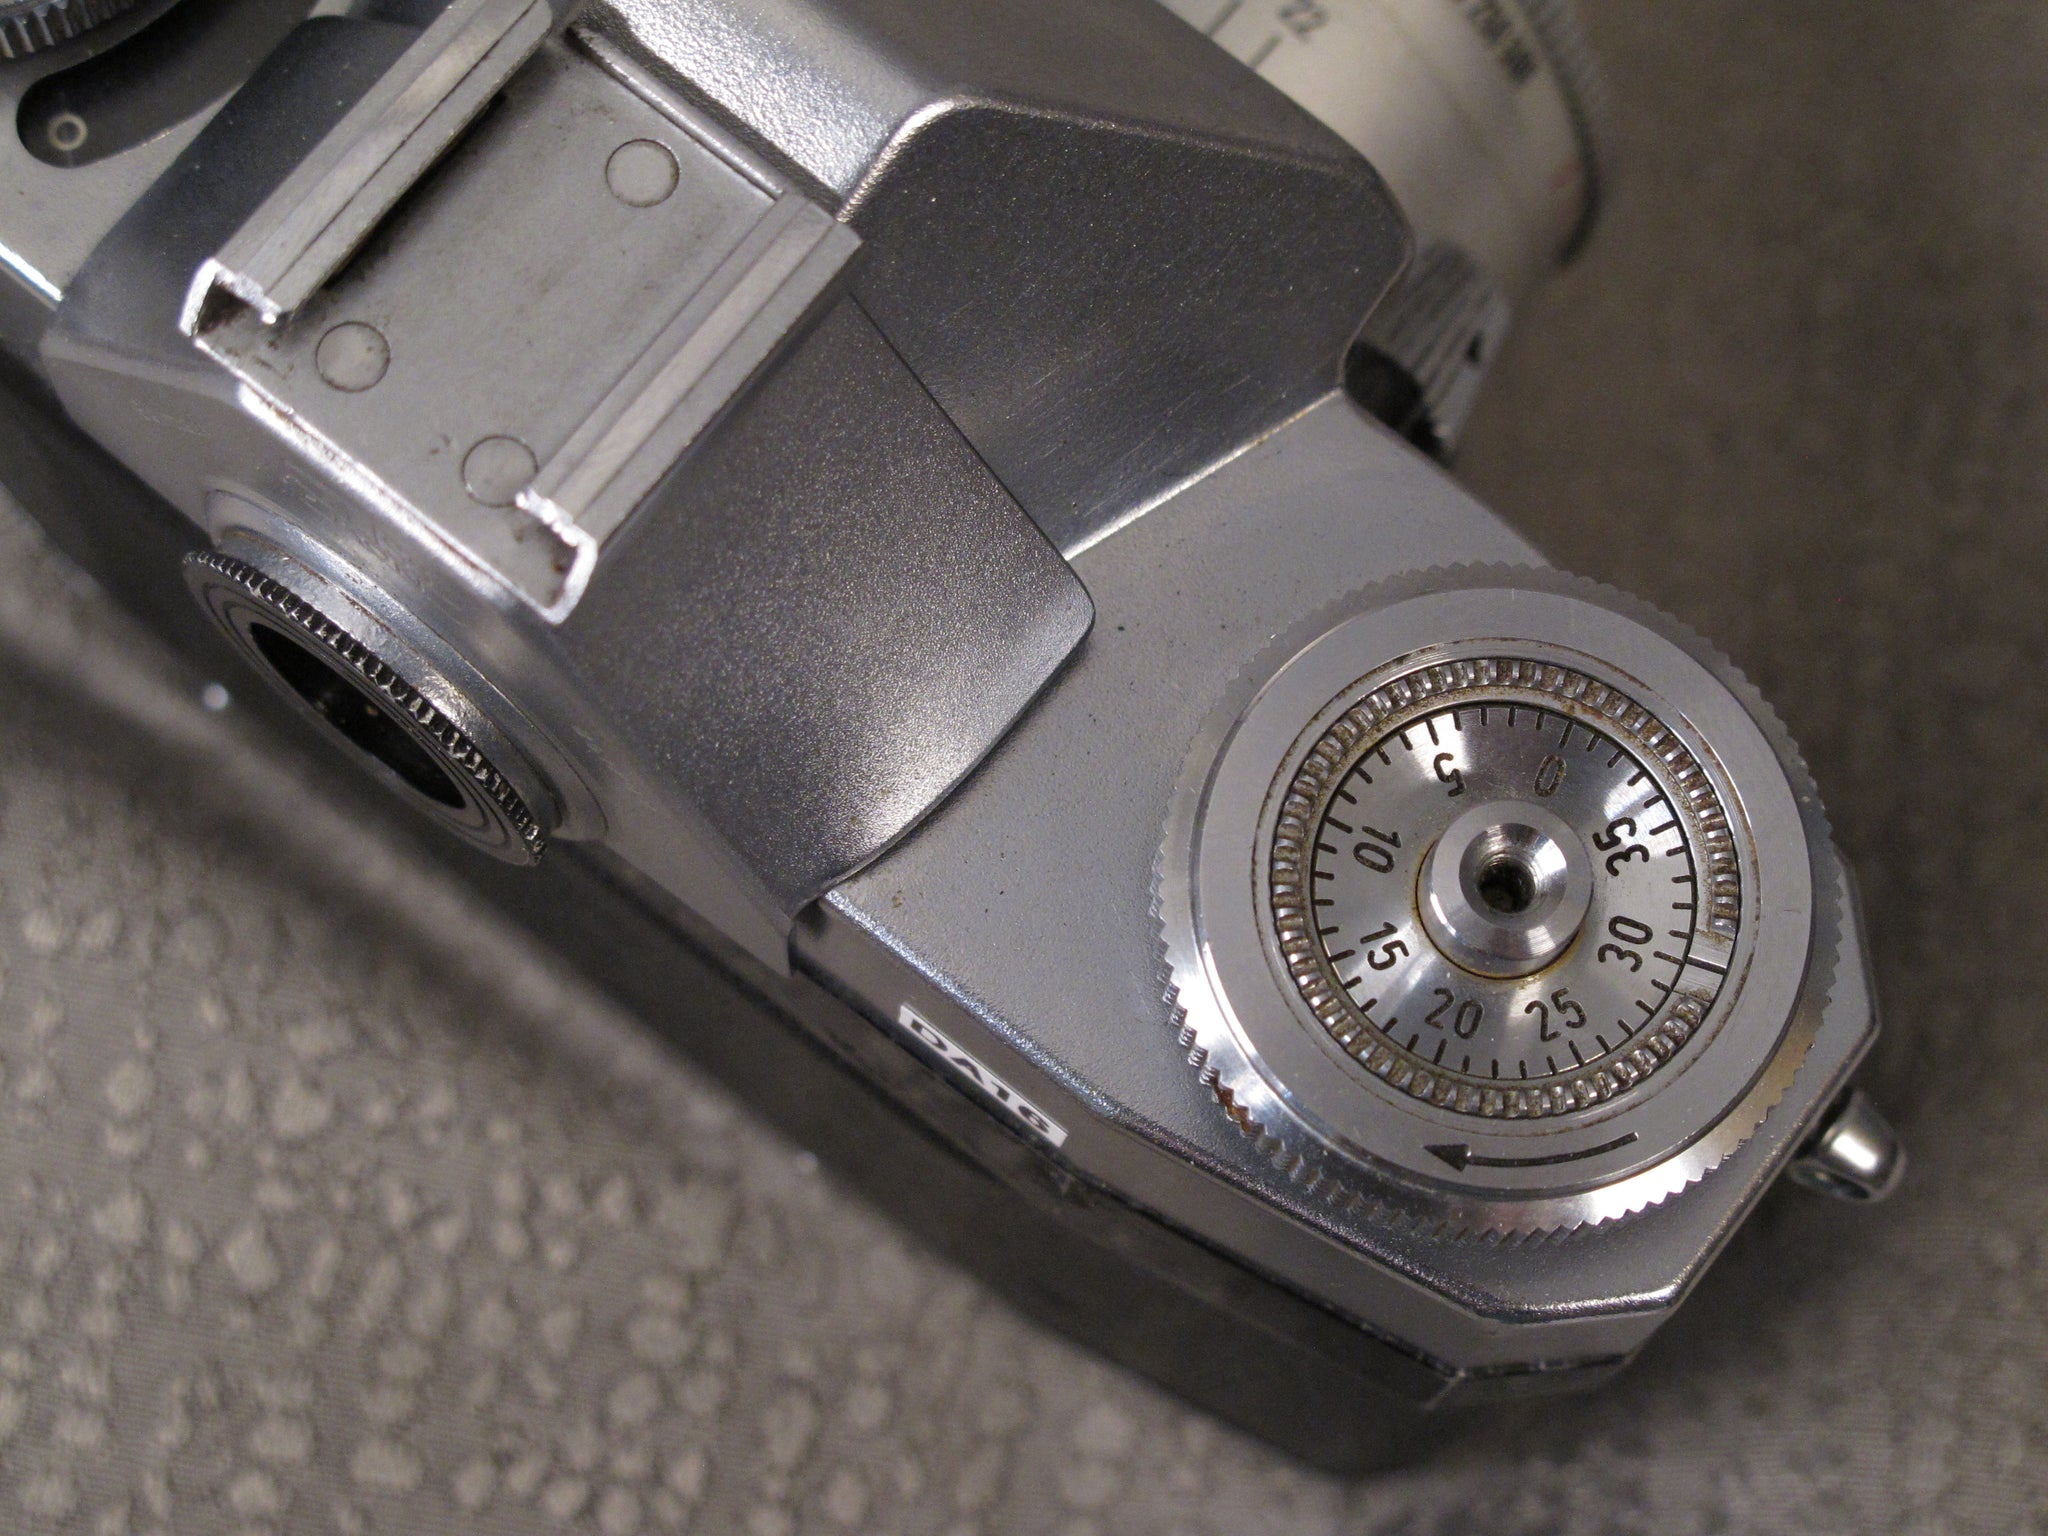 Contaflex Zeiss Ikon with Tessar Carl Zeiss 50mm f2.8 – Phototek